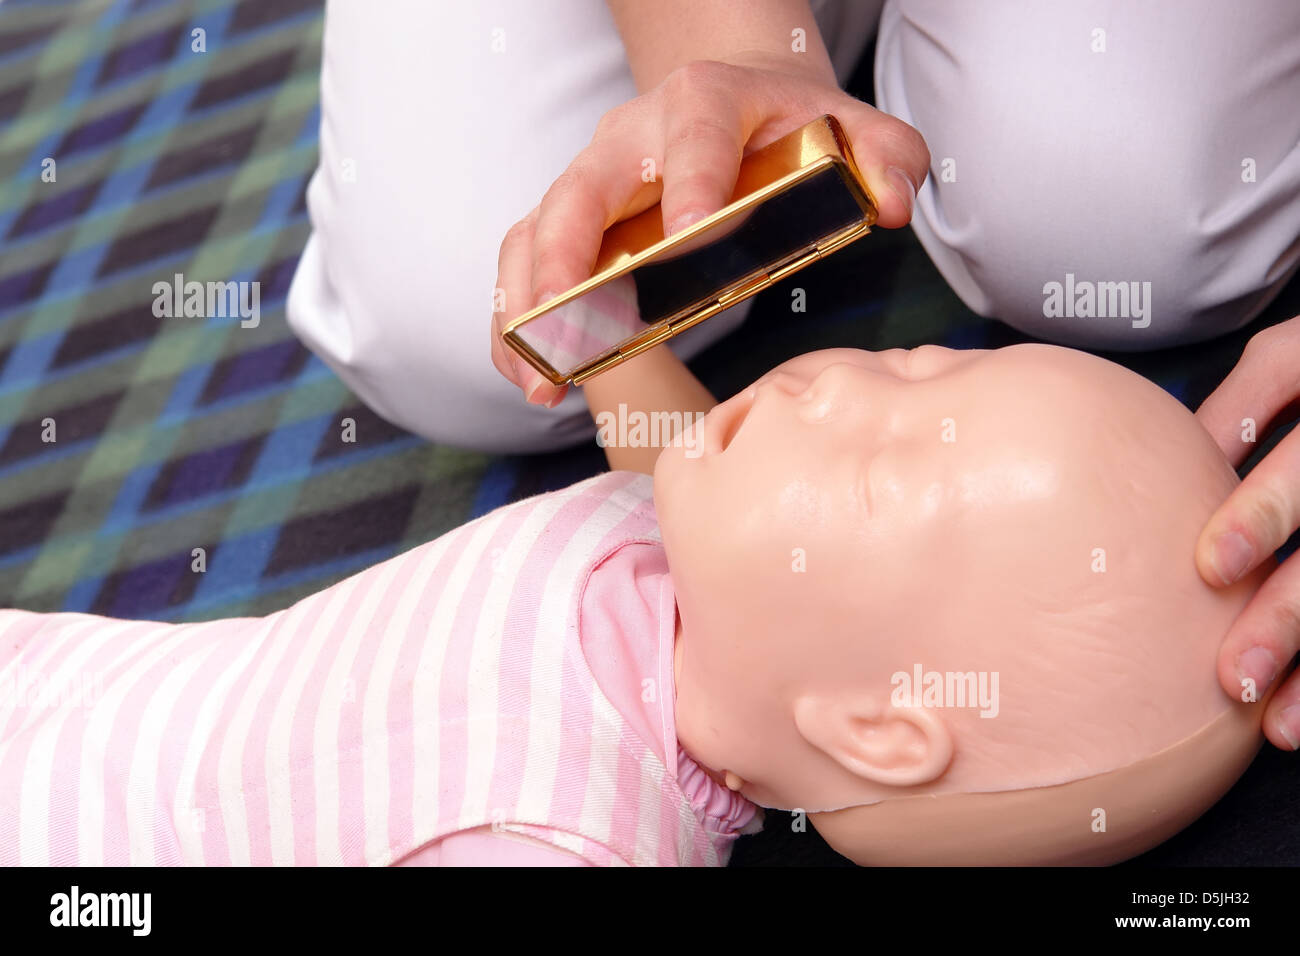 Primo soccorso istruttore dimostrando come controllare la vita infantile funzioni usando uno specchio Foto Stock